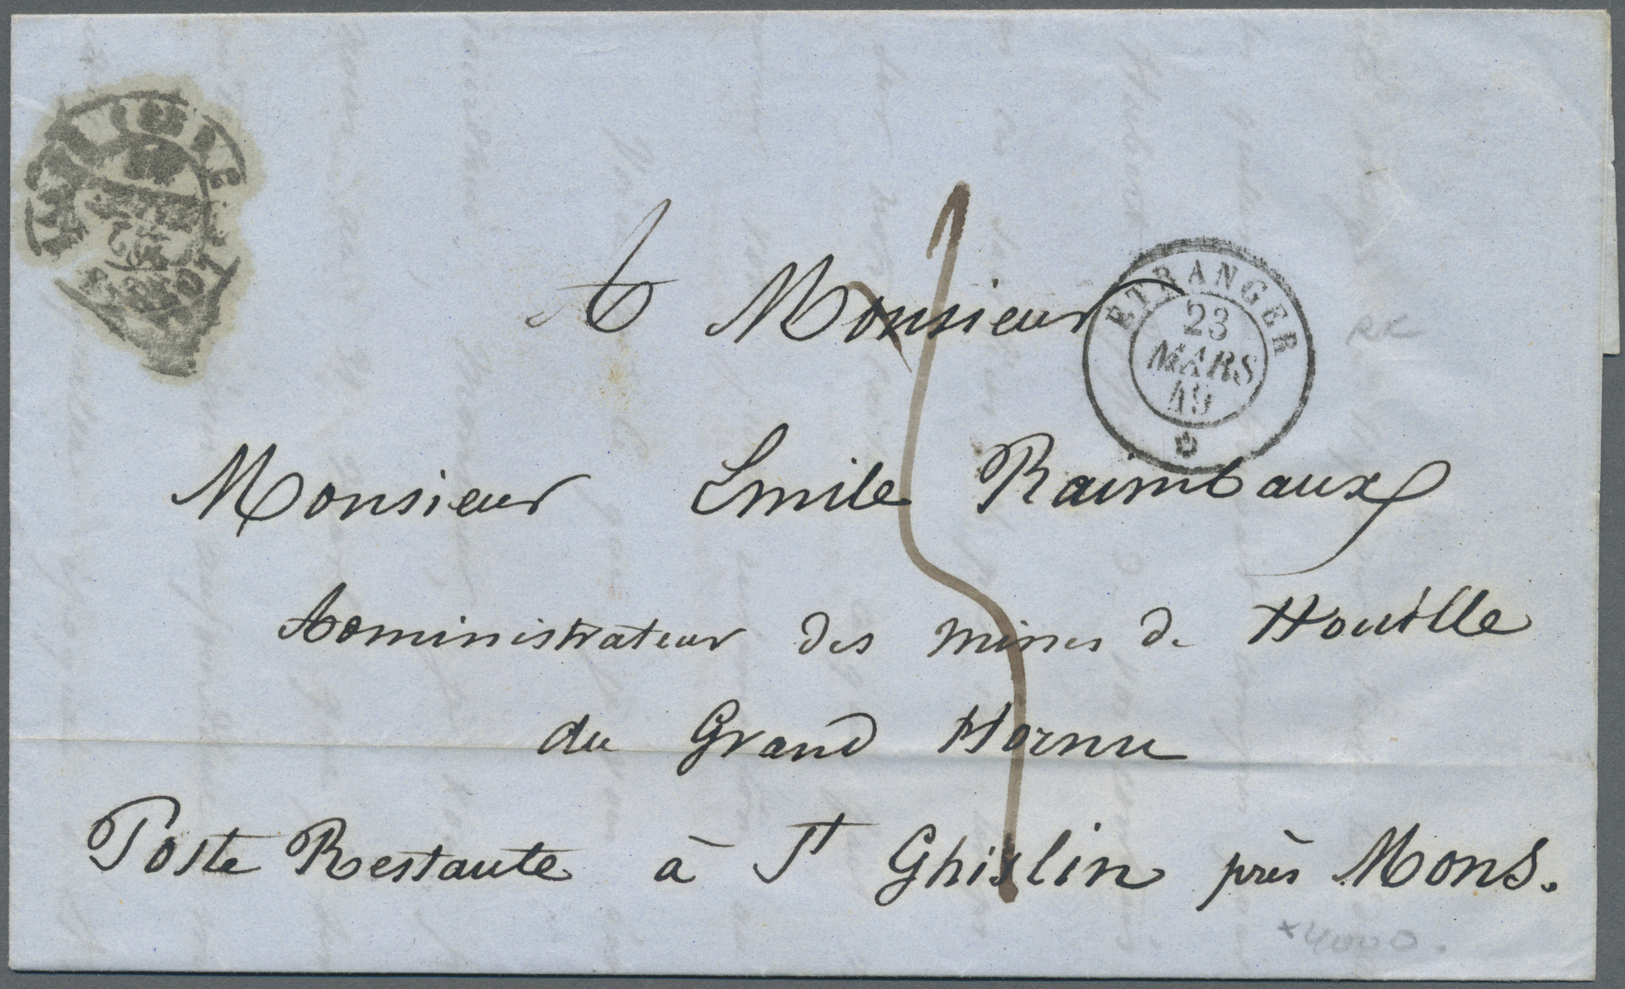 Br Frankreich - Vorphilatelie: 1693/1881, 93 Mostly Pre Philatelic Letters Sent To Or From PARIS Includ - 1792-1815: Départements Conquis